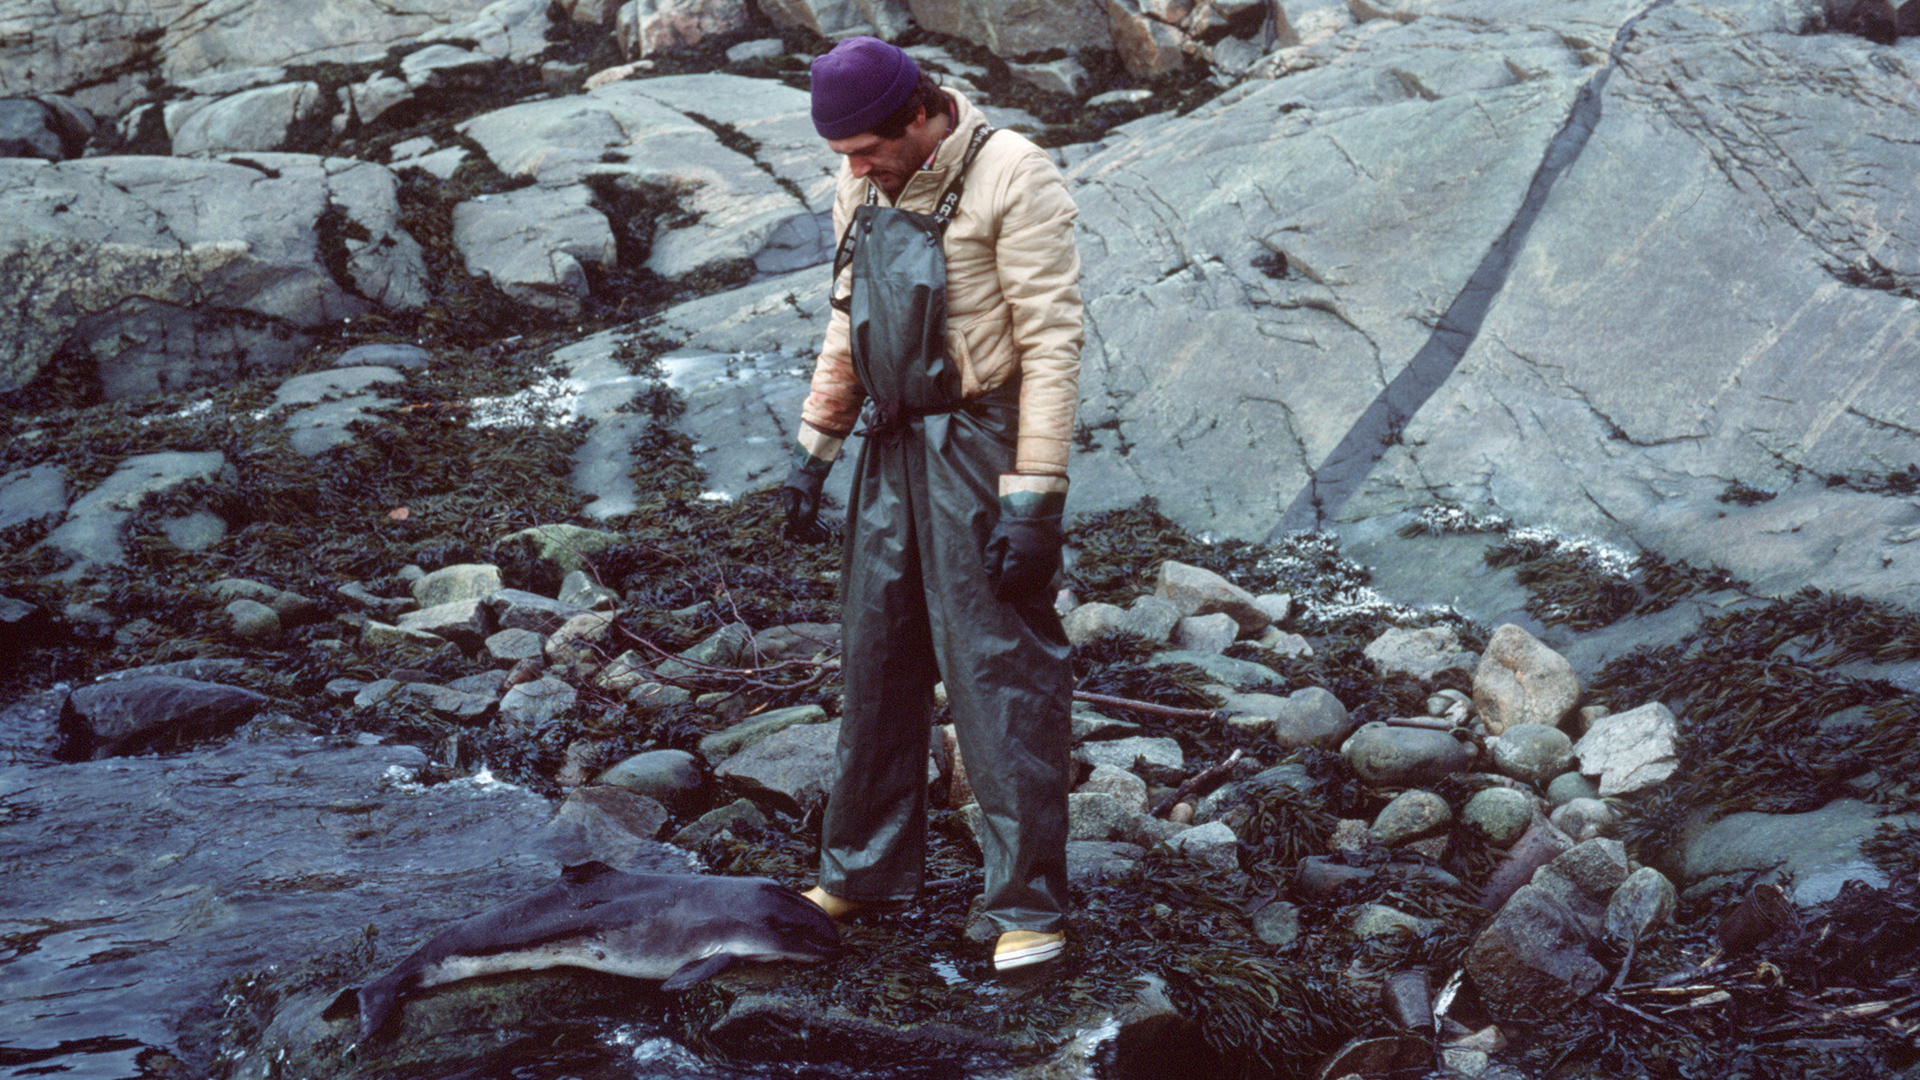 À marée basse, sur la rive rocheuse recouverte d’algues, un homme équipé d’une salopette imperméable se tient devant la carcasse d’un tout petit marsouin.